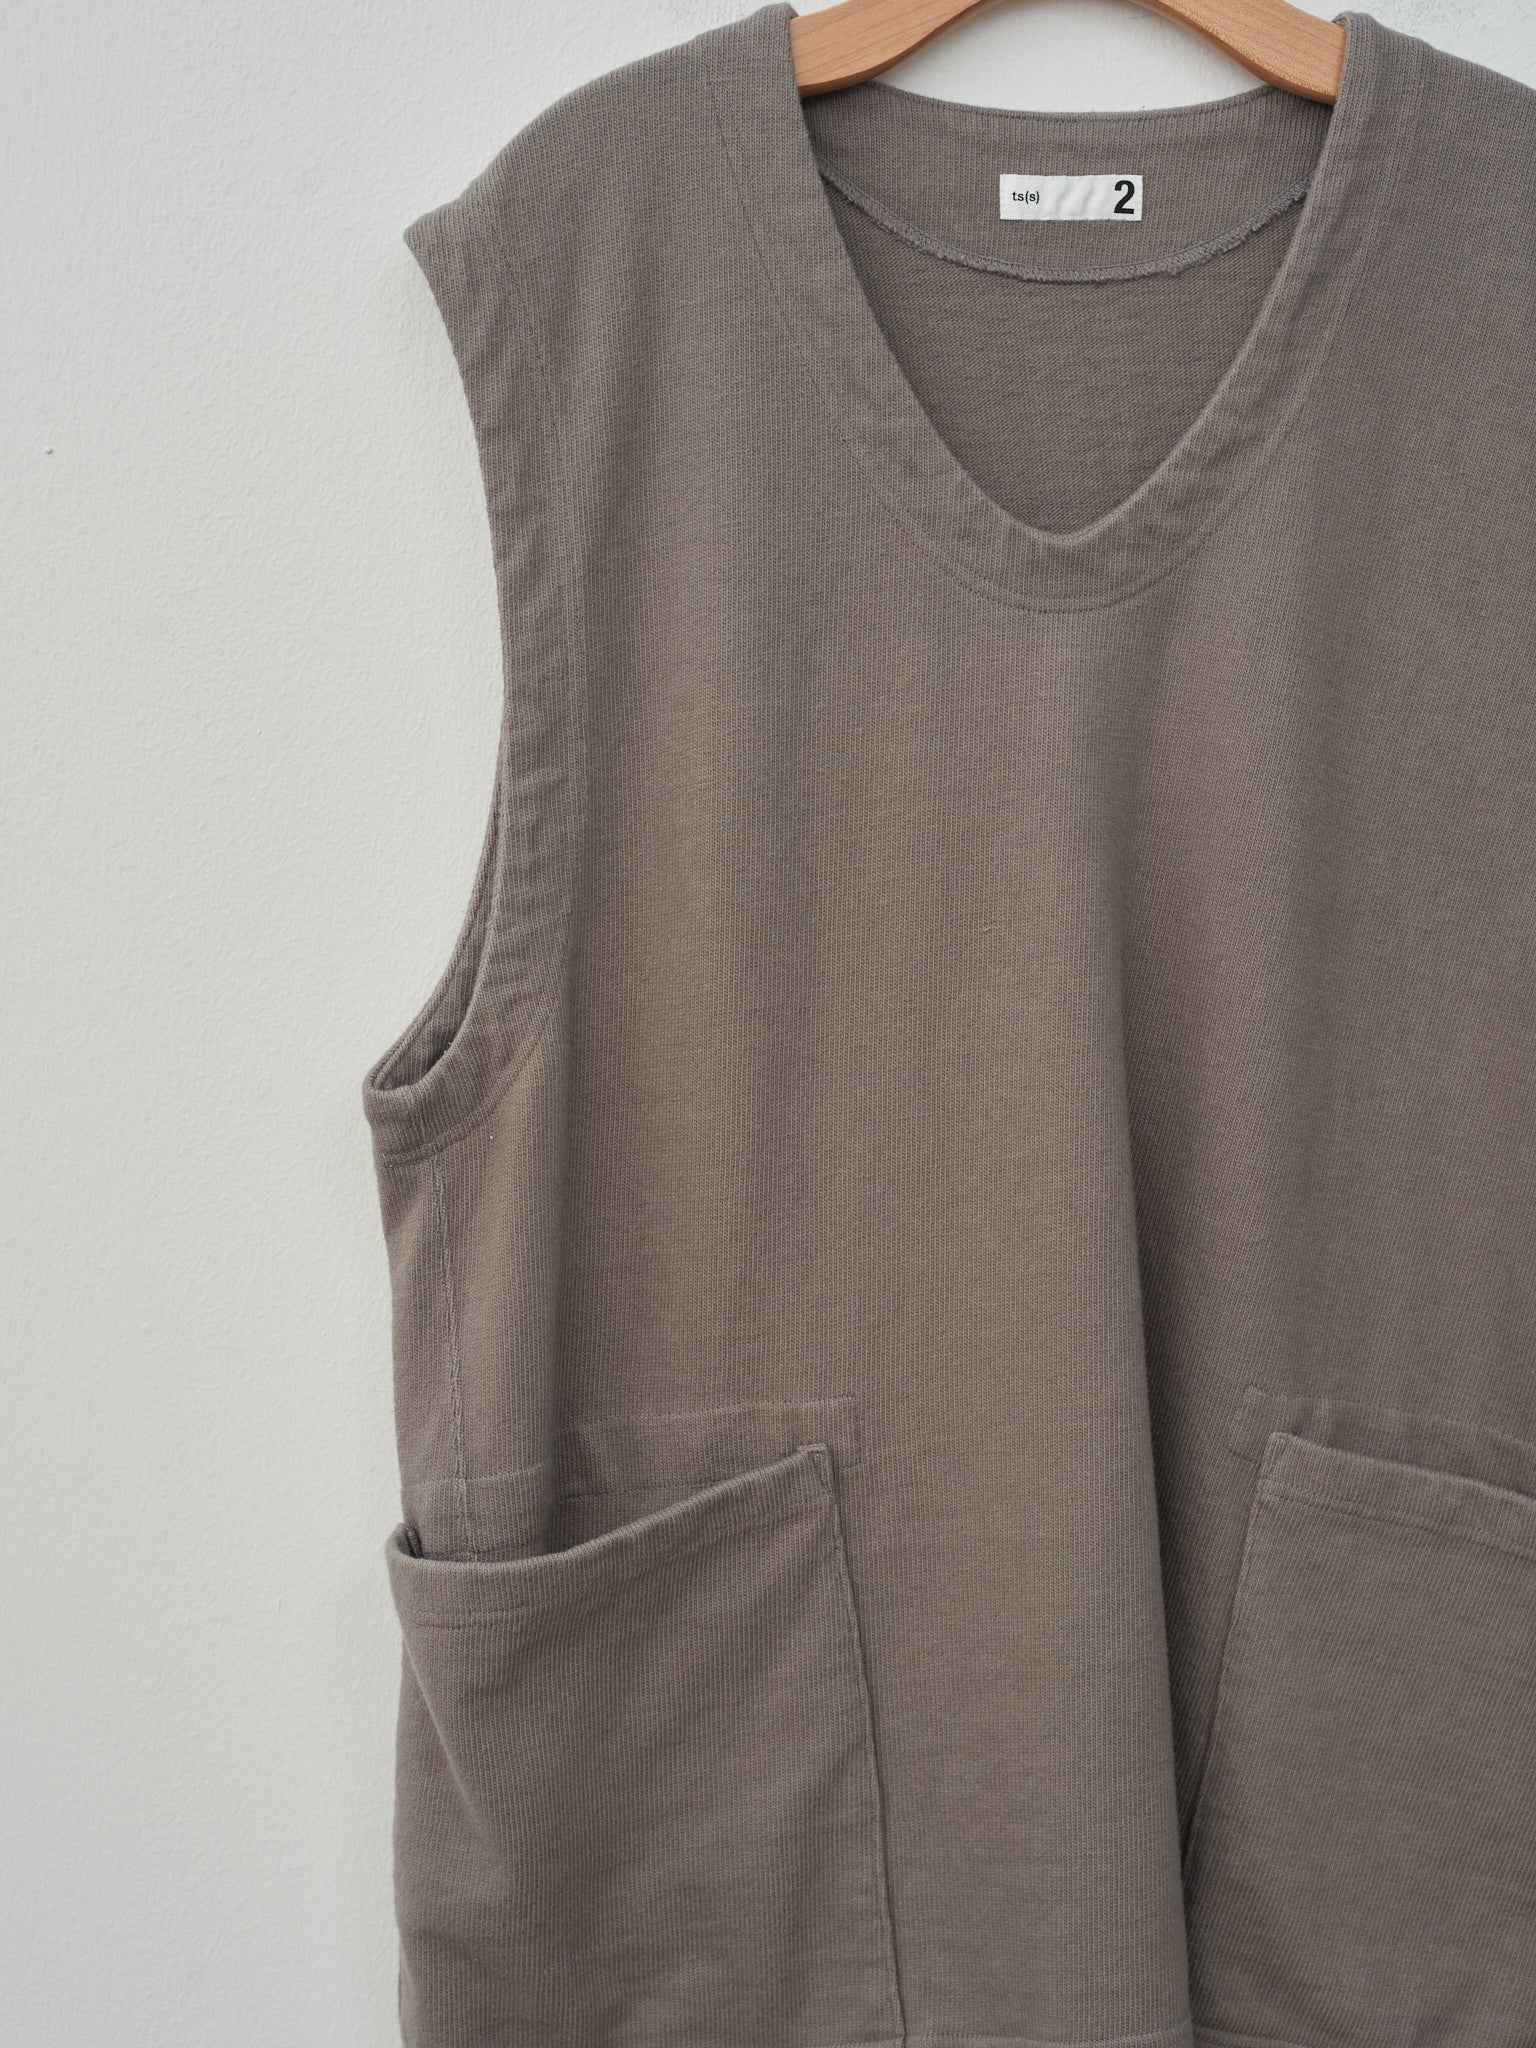 Namu Shop - ts(s) Soft Heavy Jersey Patch Pocket Vest - Gray